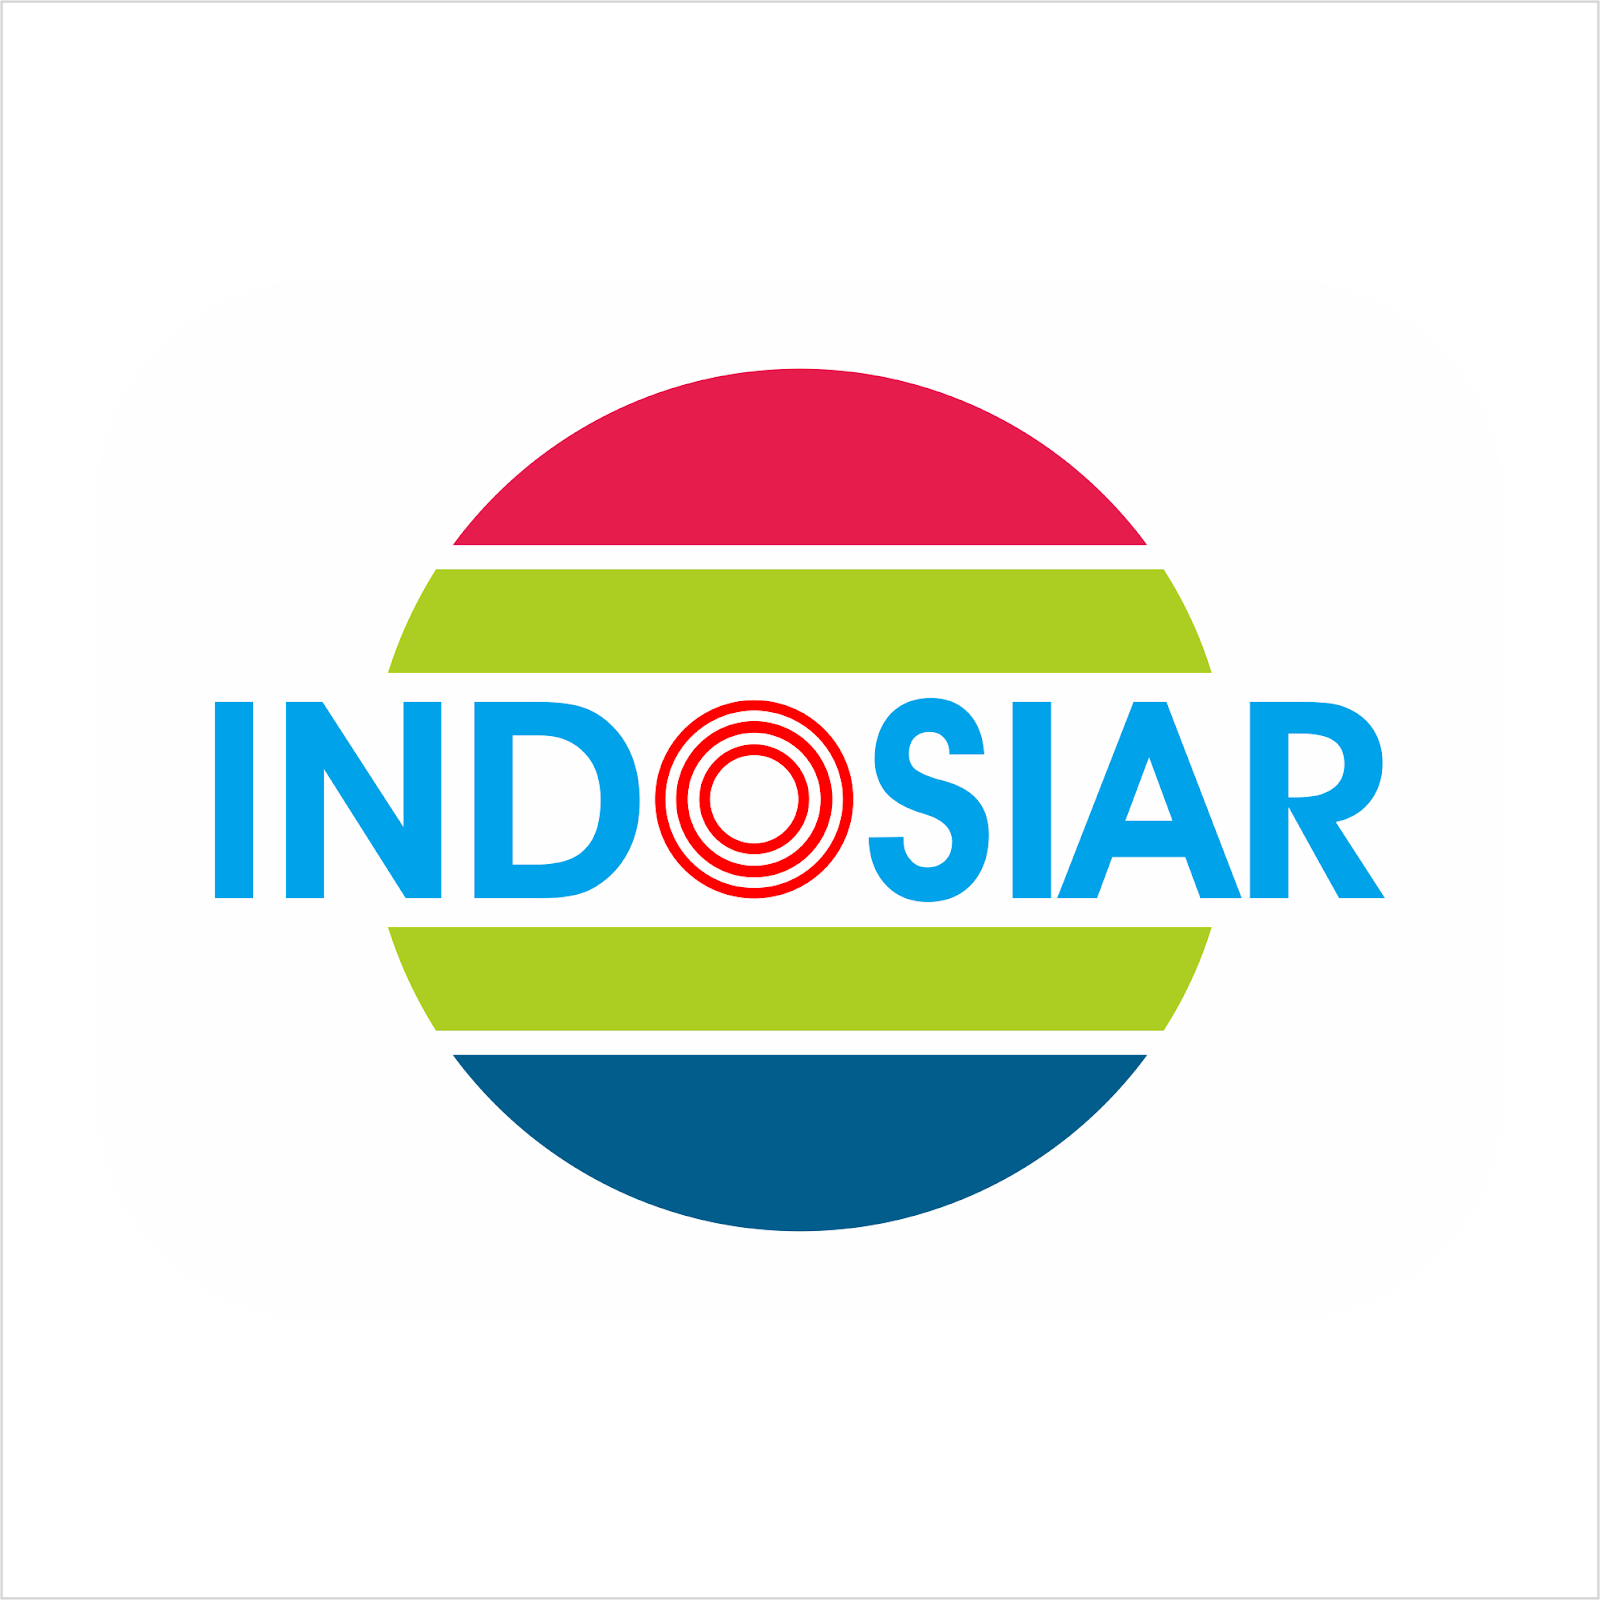 Indosiar Logo Vector Cdr Free Download Blogovector